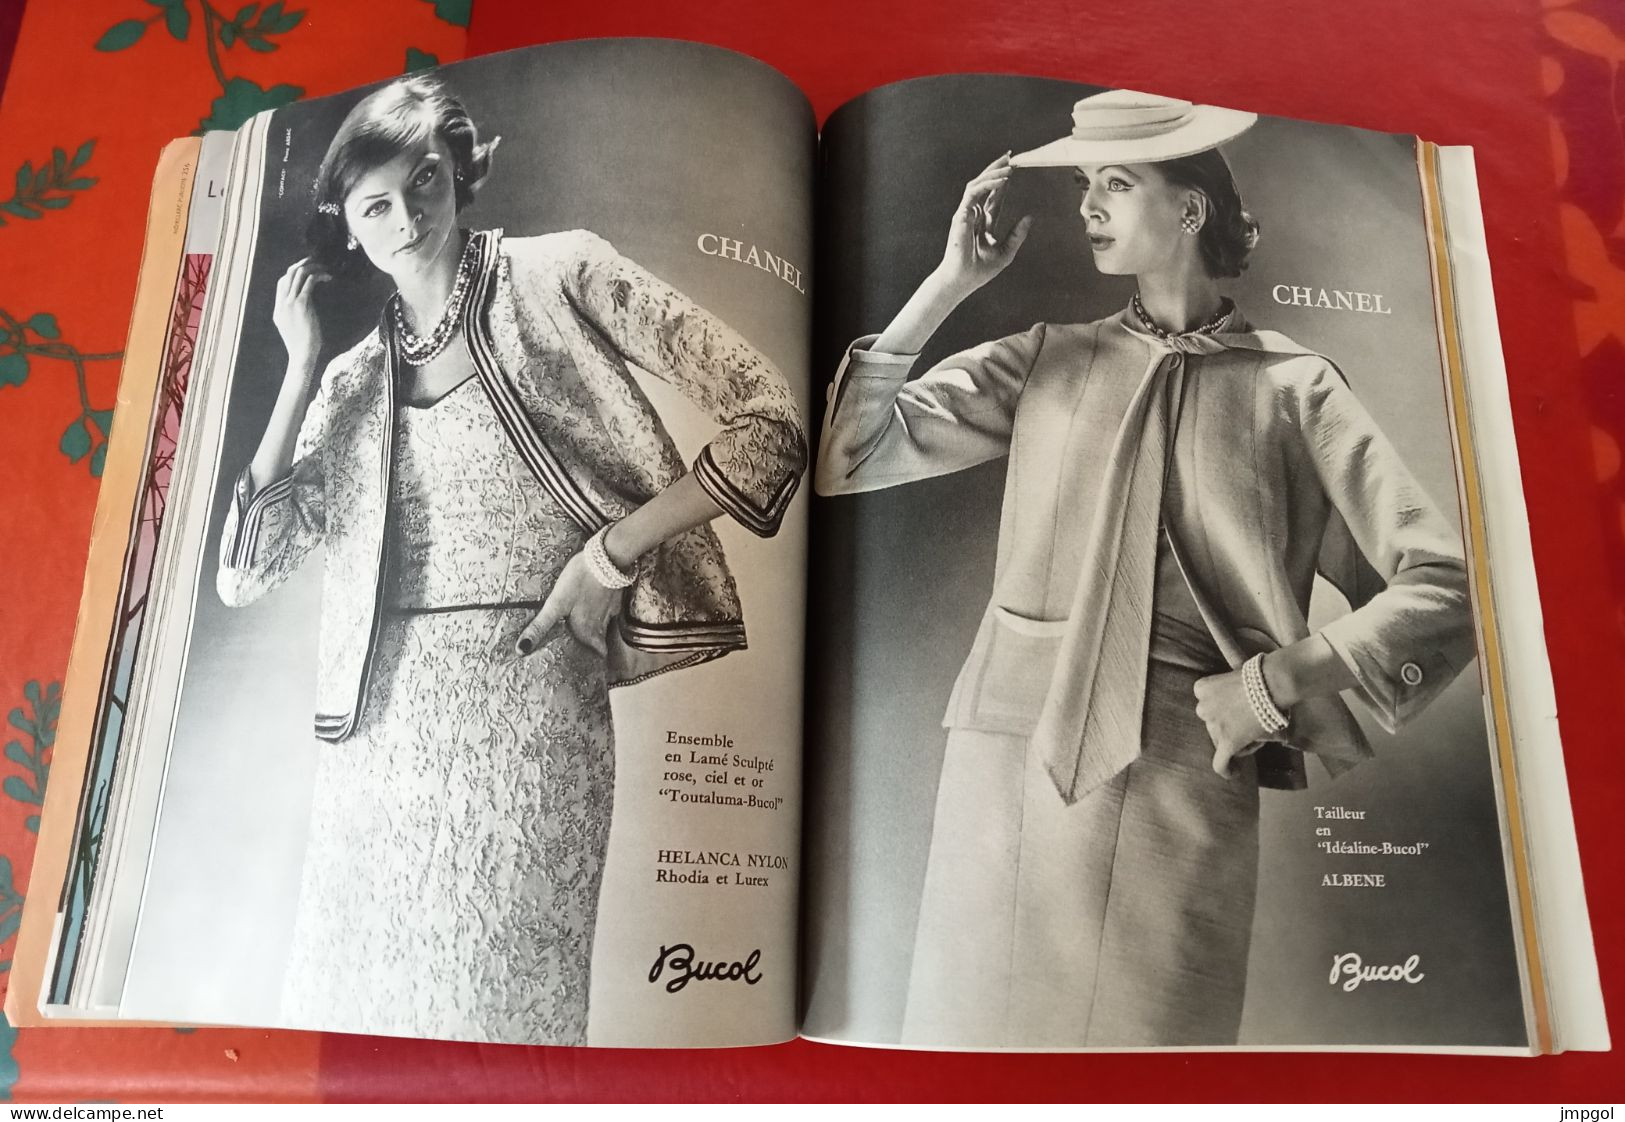 Vogue Mars 1959 Spécial Les Collections De Printemps Paris Tendance Grands Couturiers Carven  Jacques Heim Cardin Chanel - Lifestyle & Mode